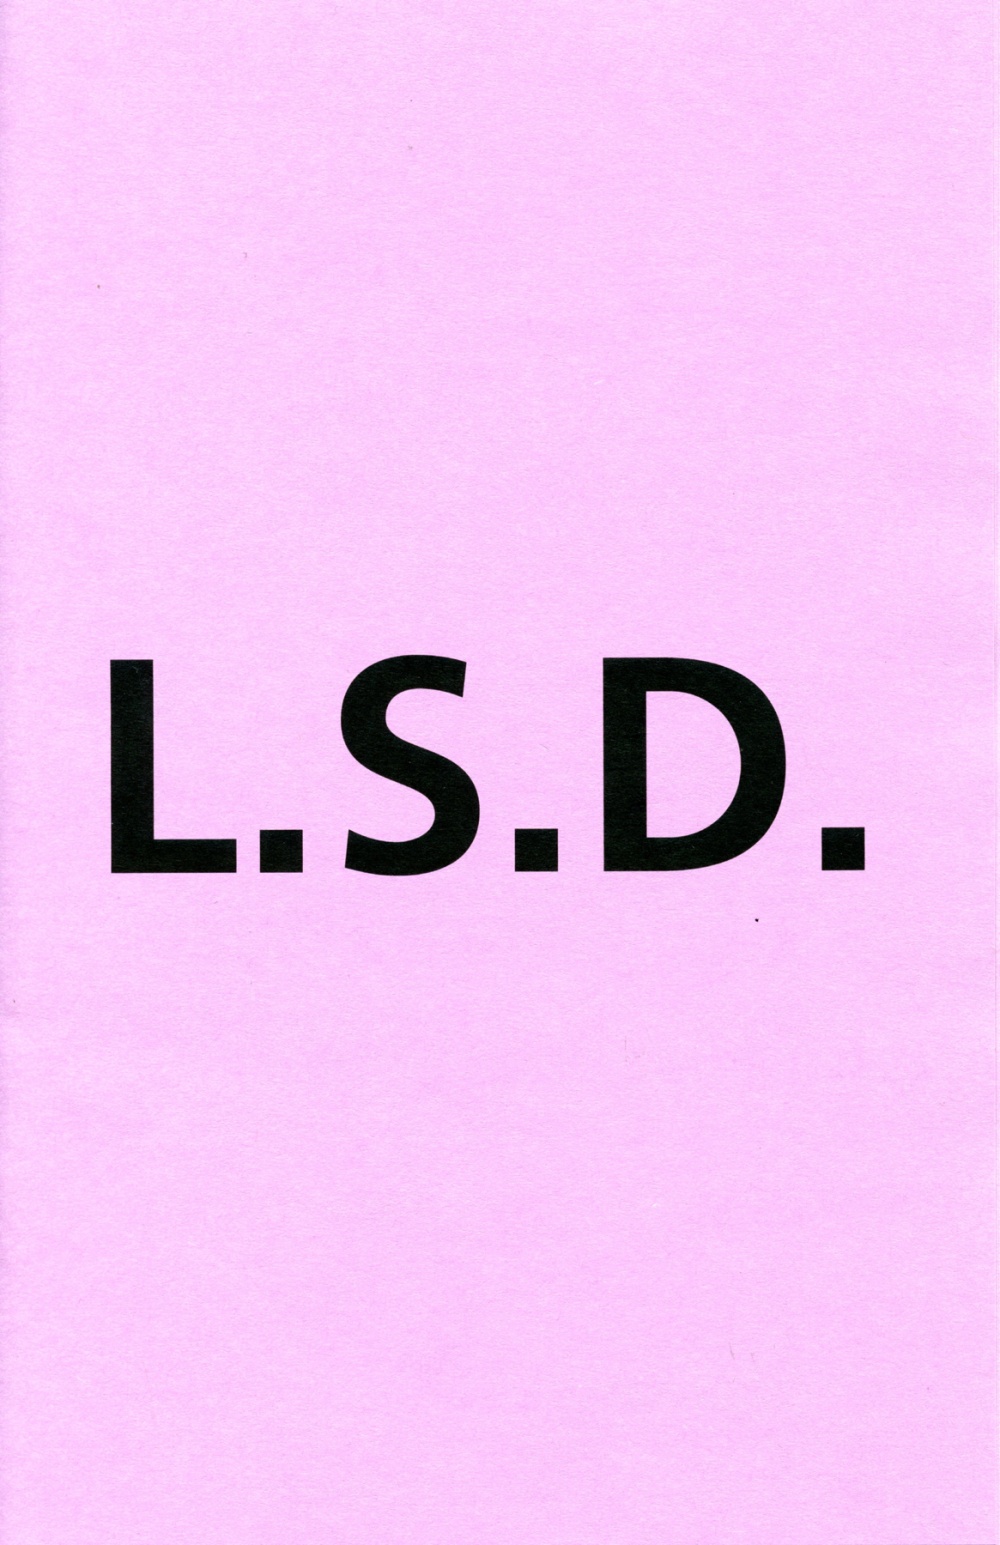 L.S.D.